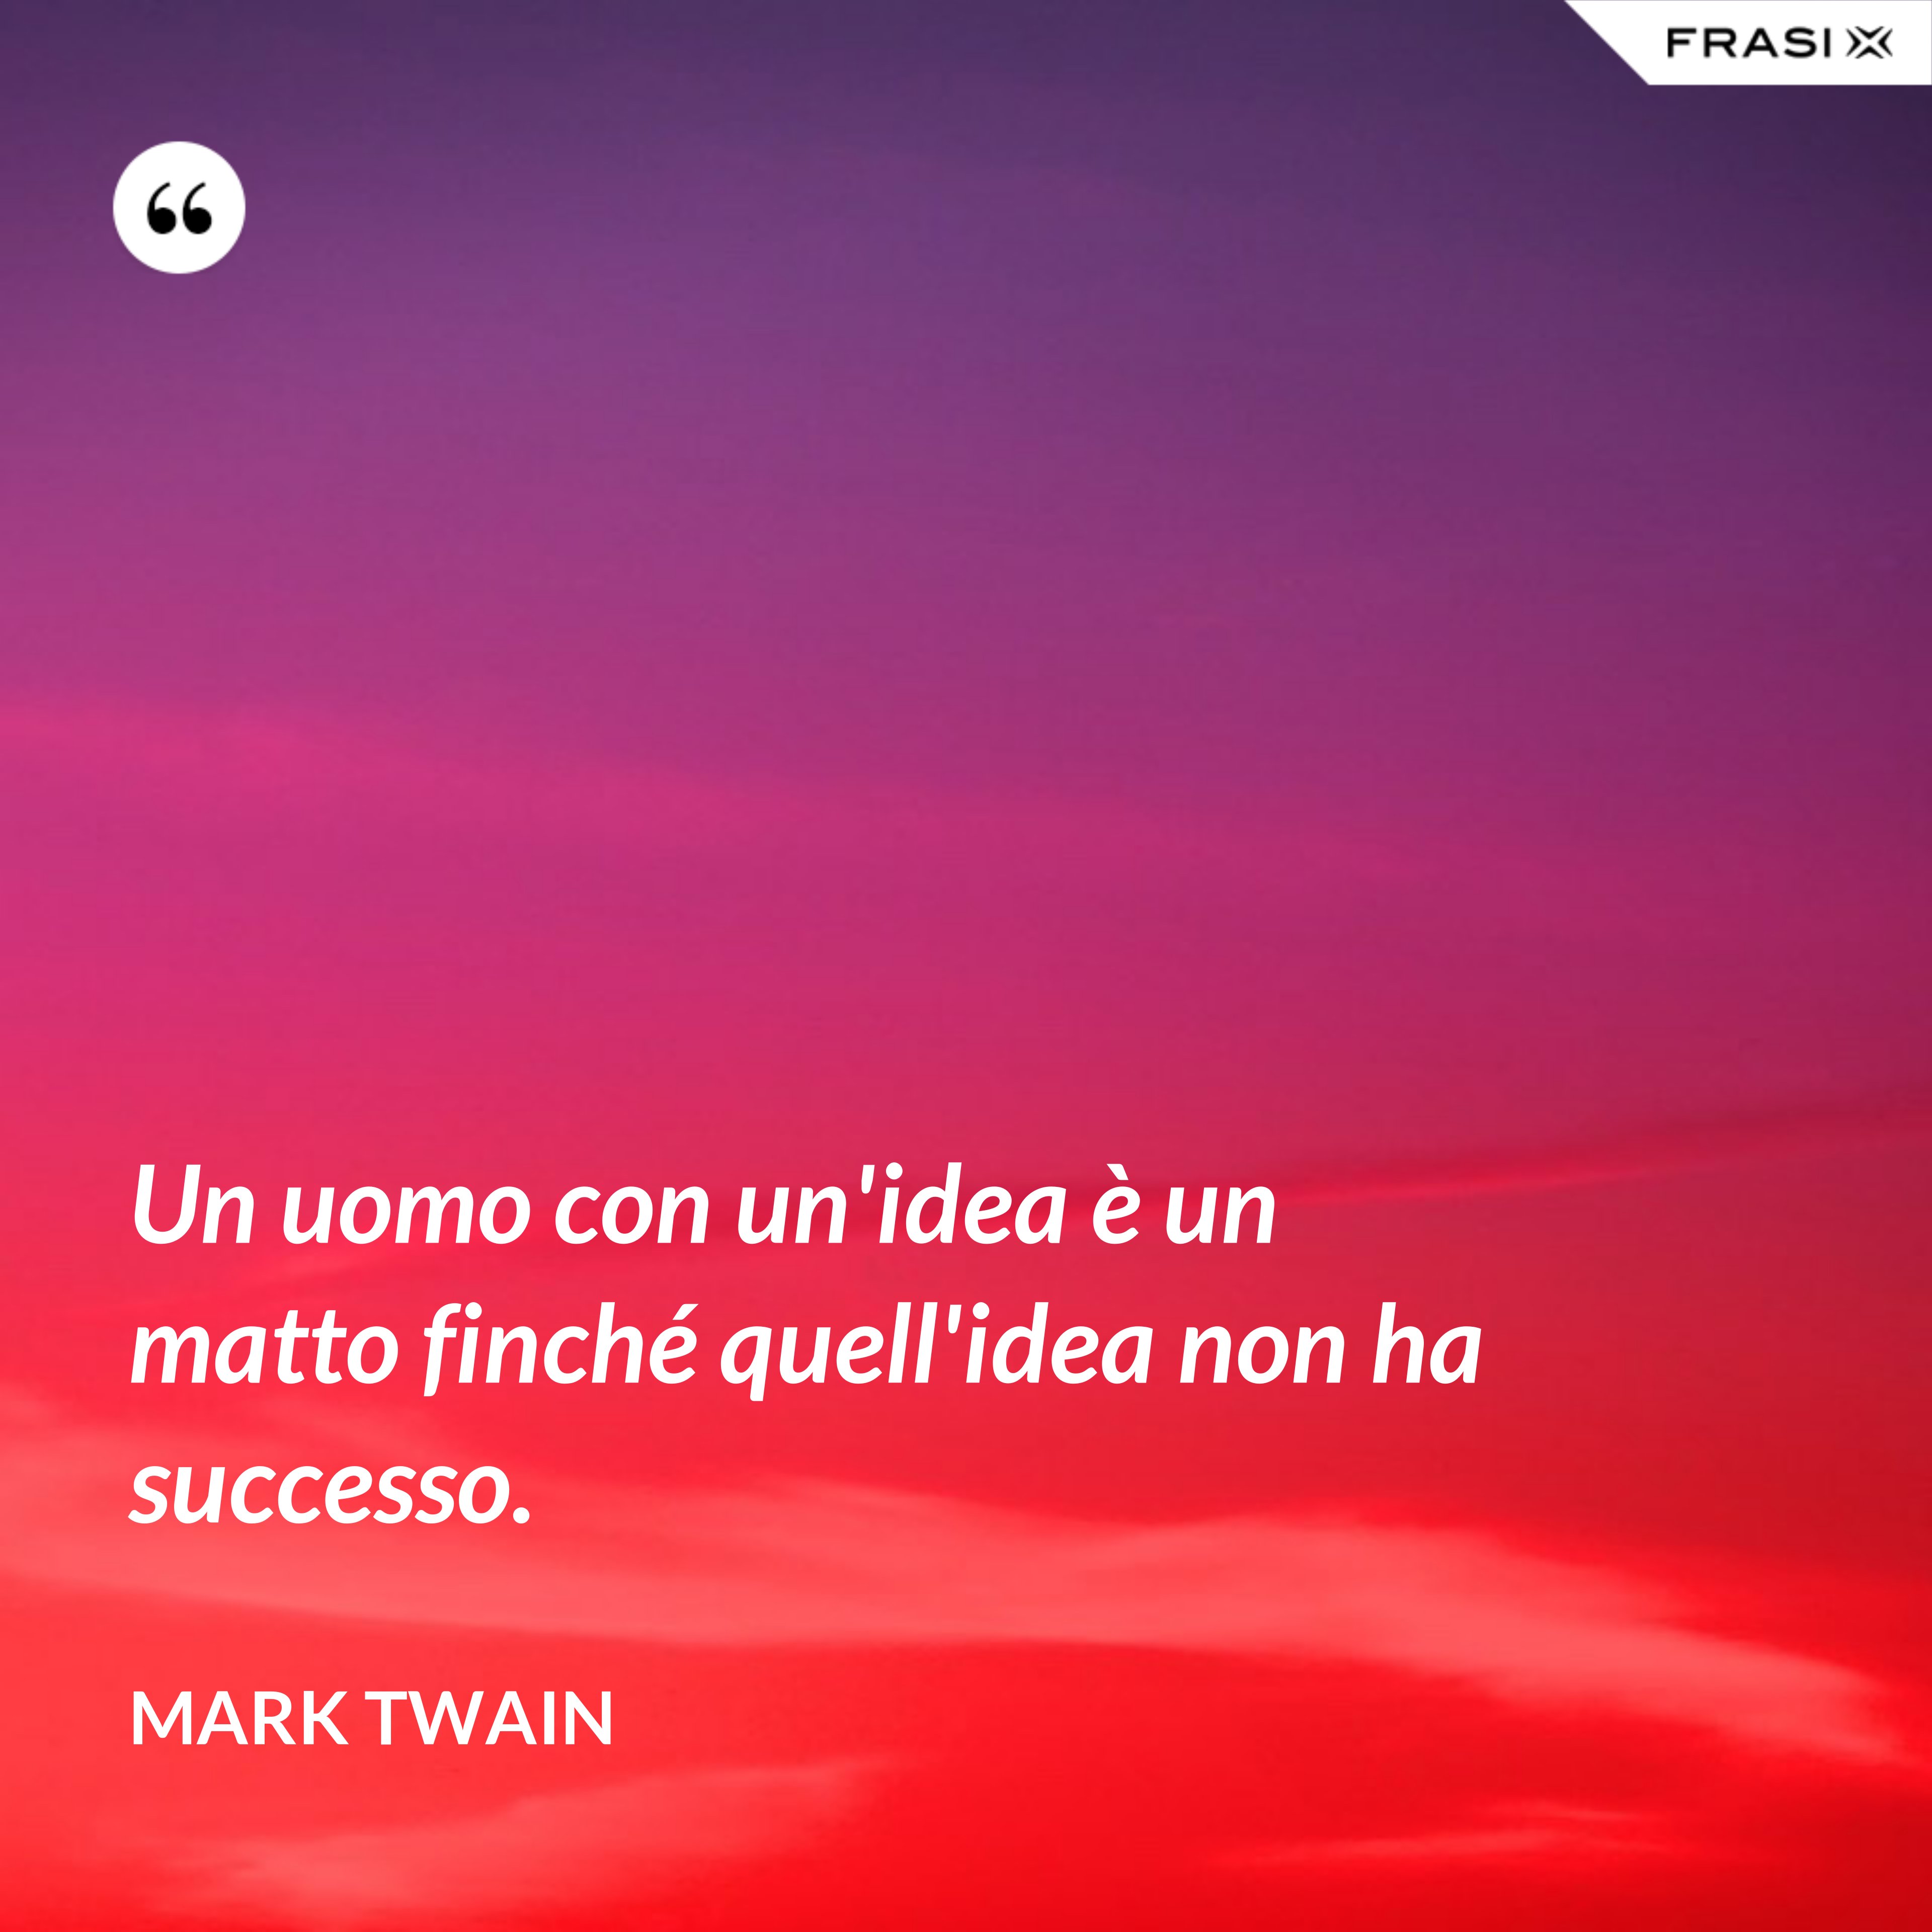 Un uomo con un'idea è un matto finché quell'idea non ha successo. - Mark Twain